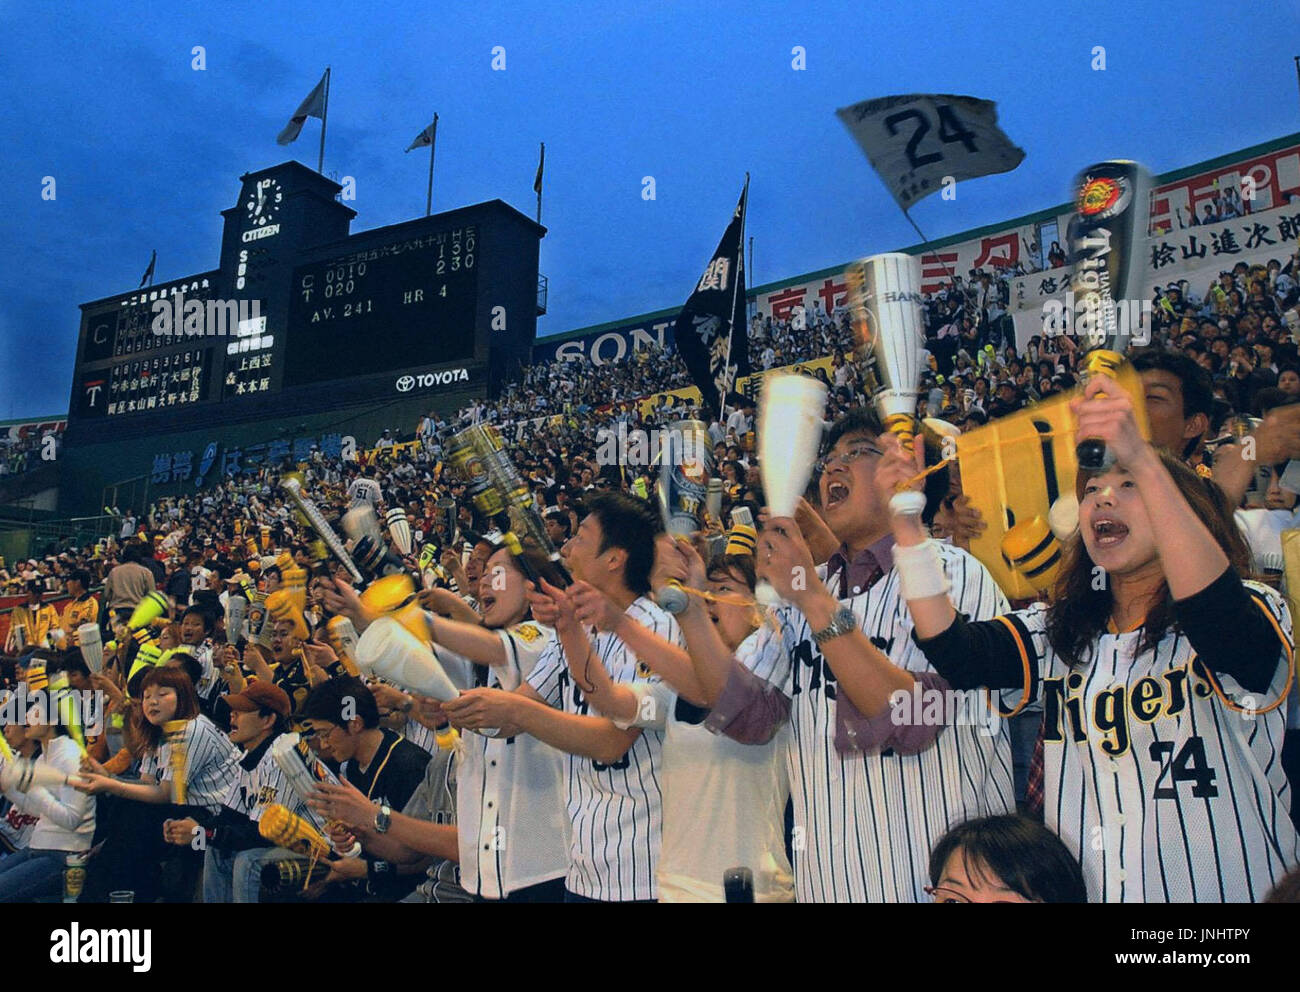 NISHINOMIYA, Japan - Hanshin Tigers fans cheering at Koshien